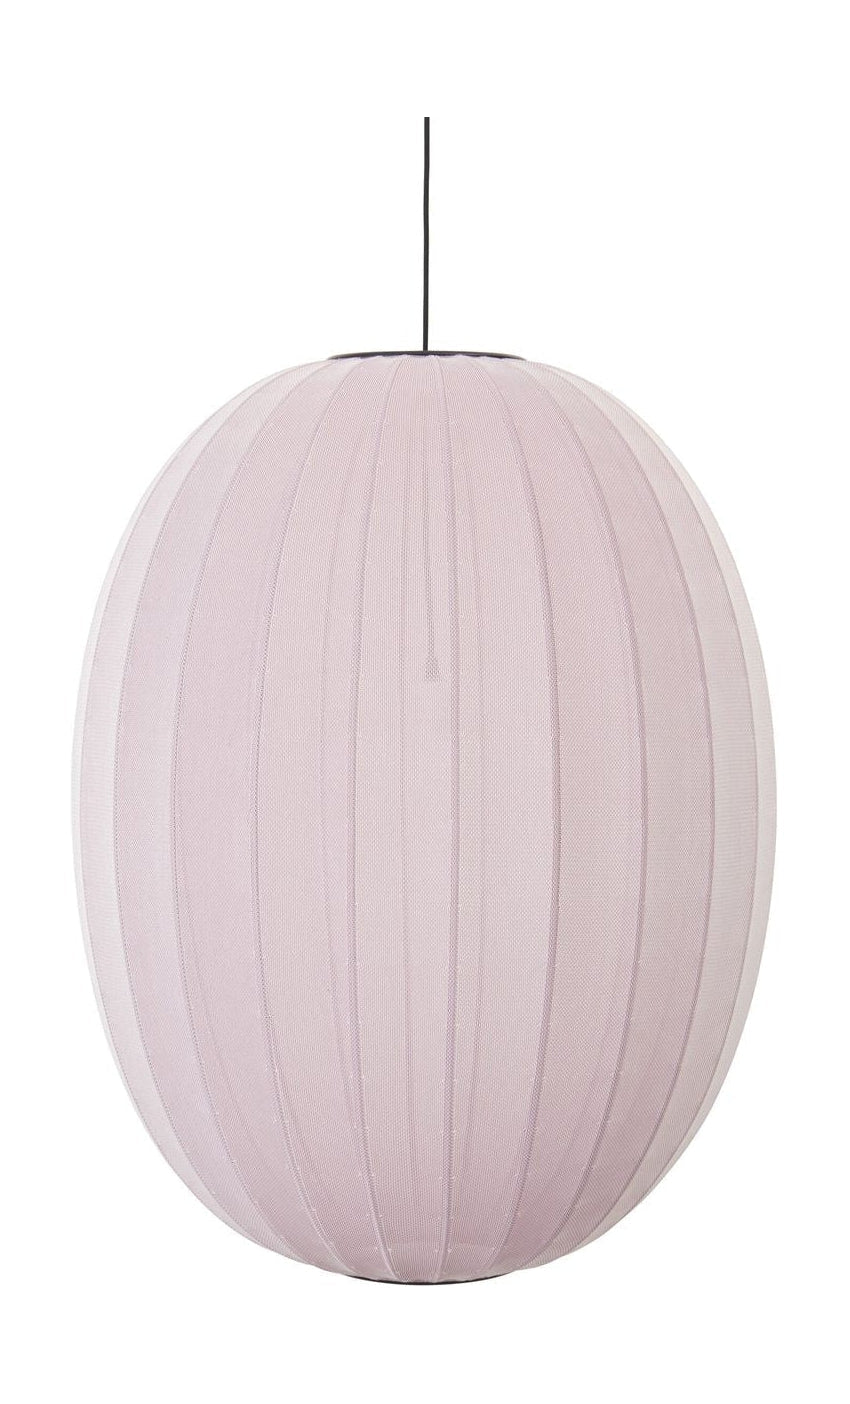 Realizzato a mano in maglia con 65 lampada a sospensione ovale alta, rosa chiaro